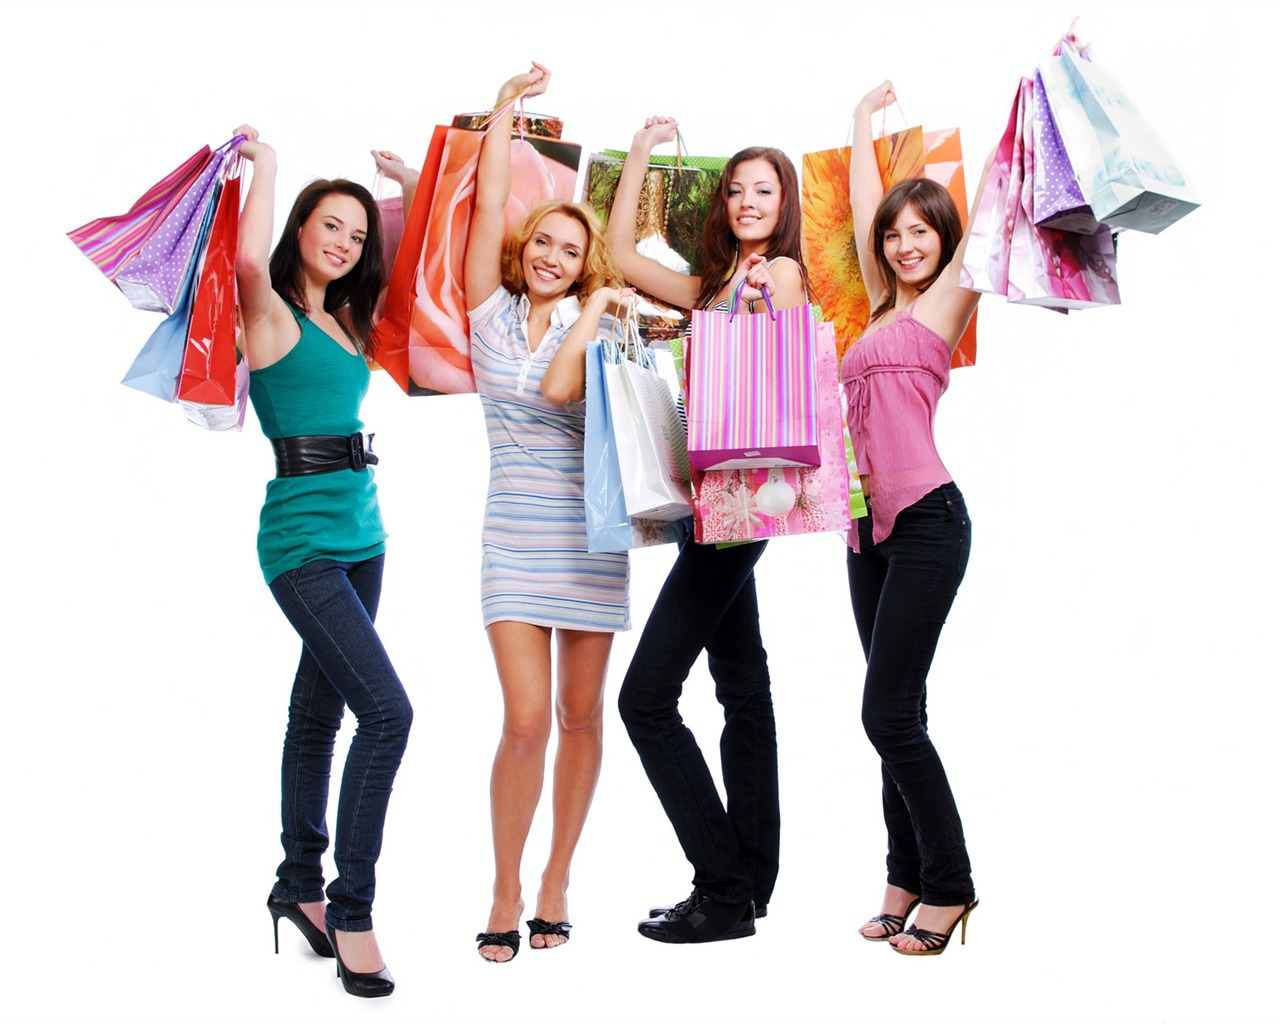 ショッピング女性HDの壁紙 (3) #14 - 1280x1024